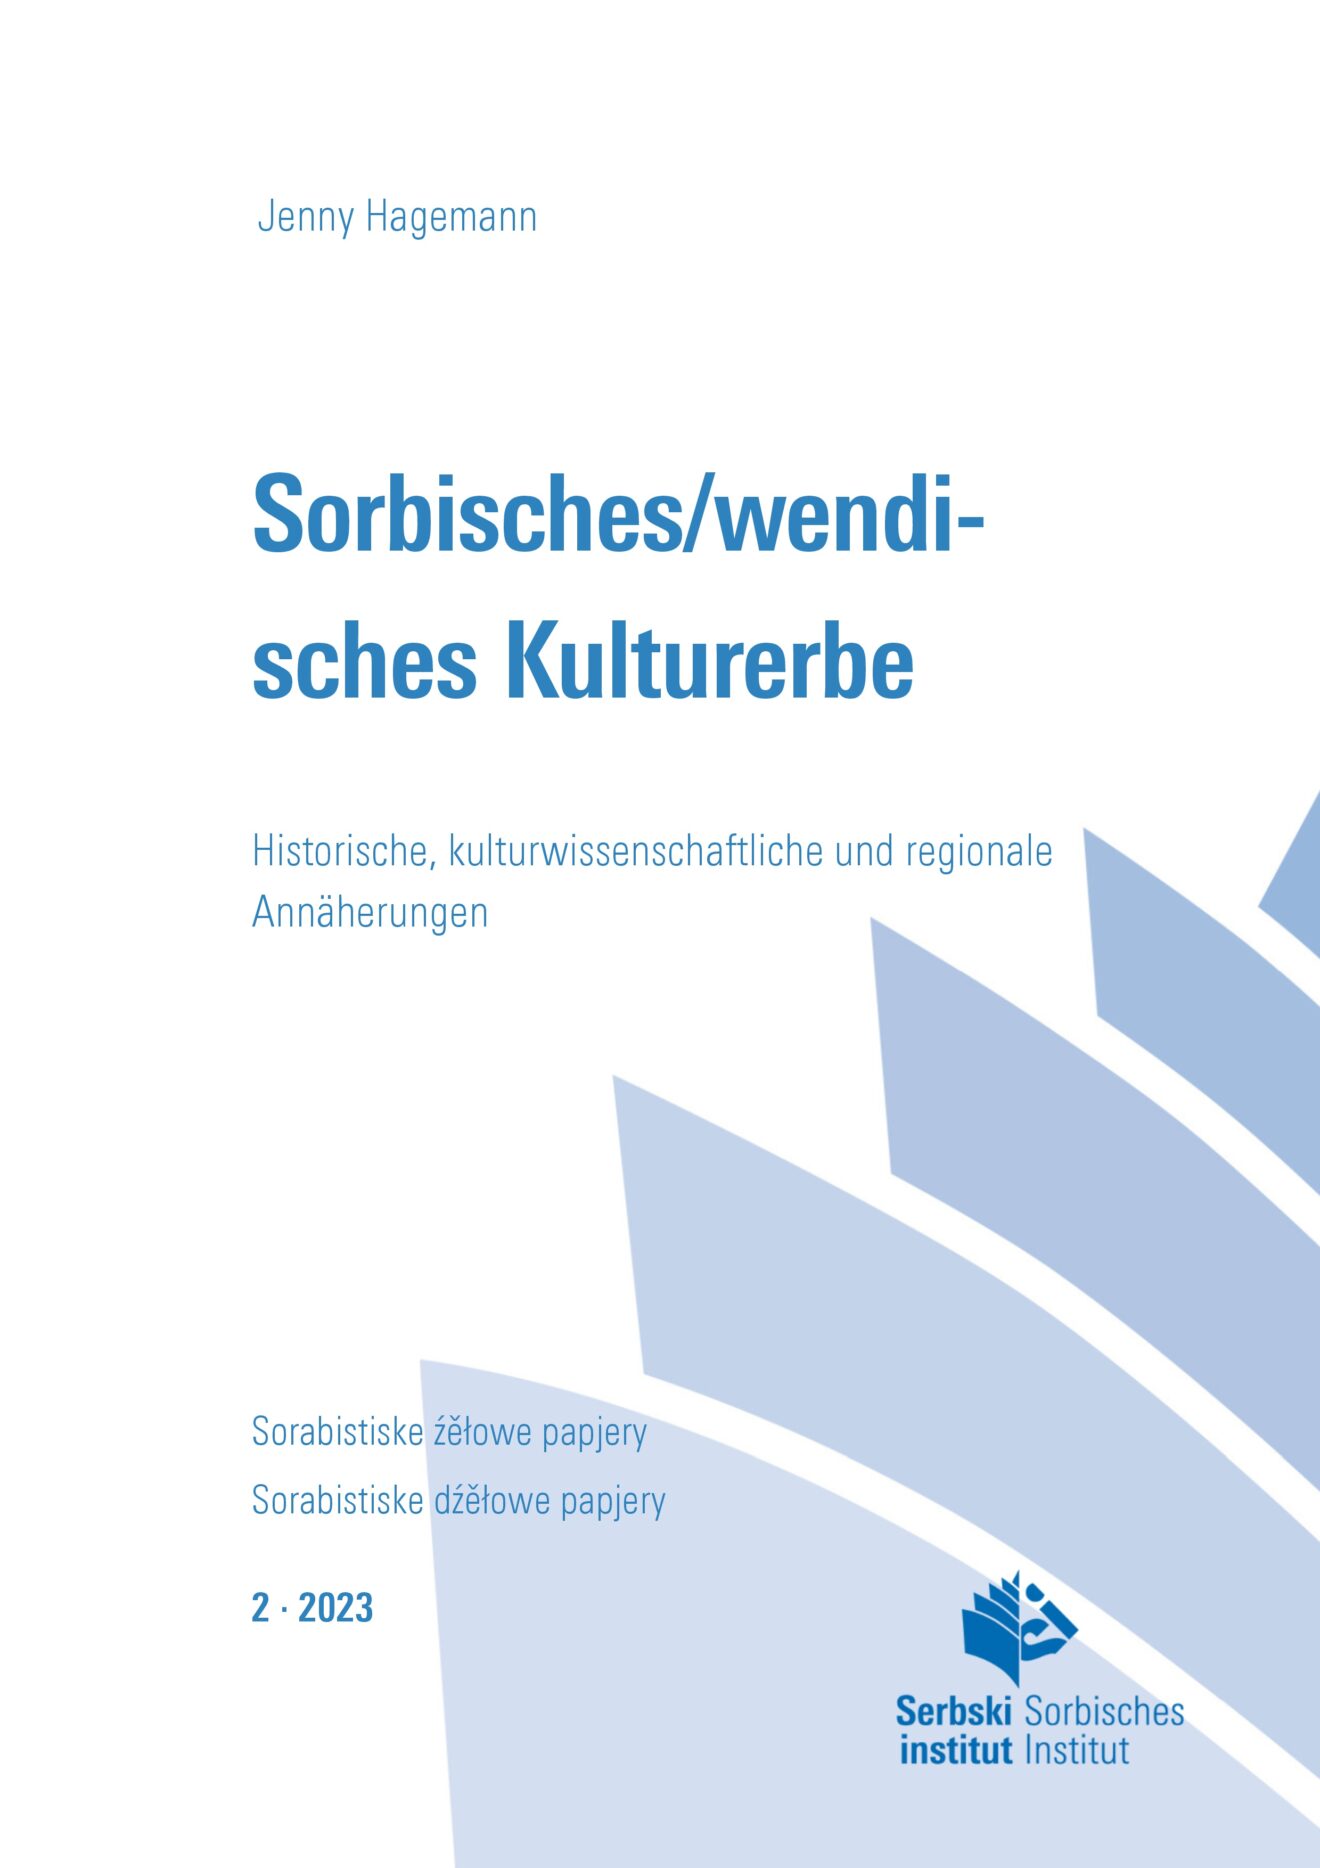 Titelblatt: Sorbisches/Wendisches Kulturerbe (Jenny Hagemann)